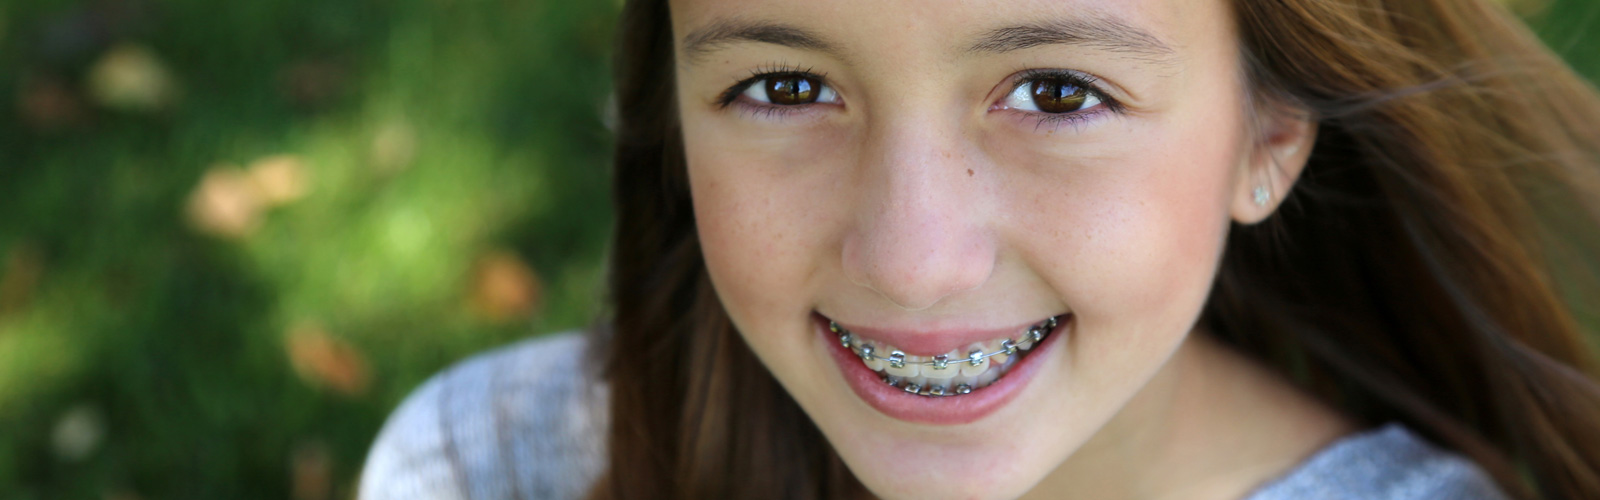 Little girl wearing orthodontics